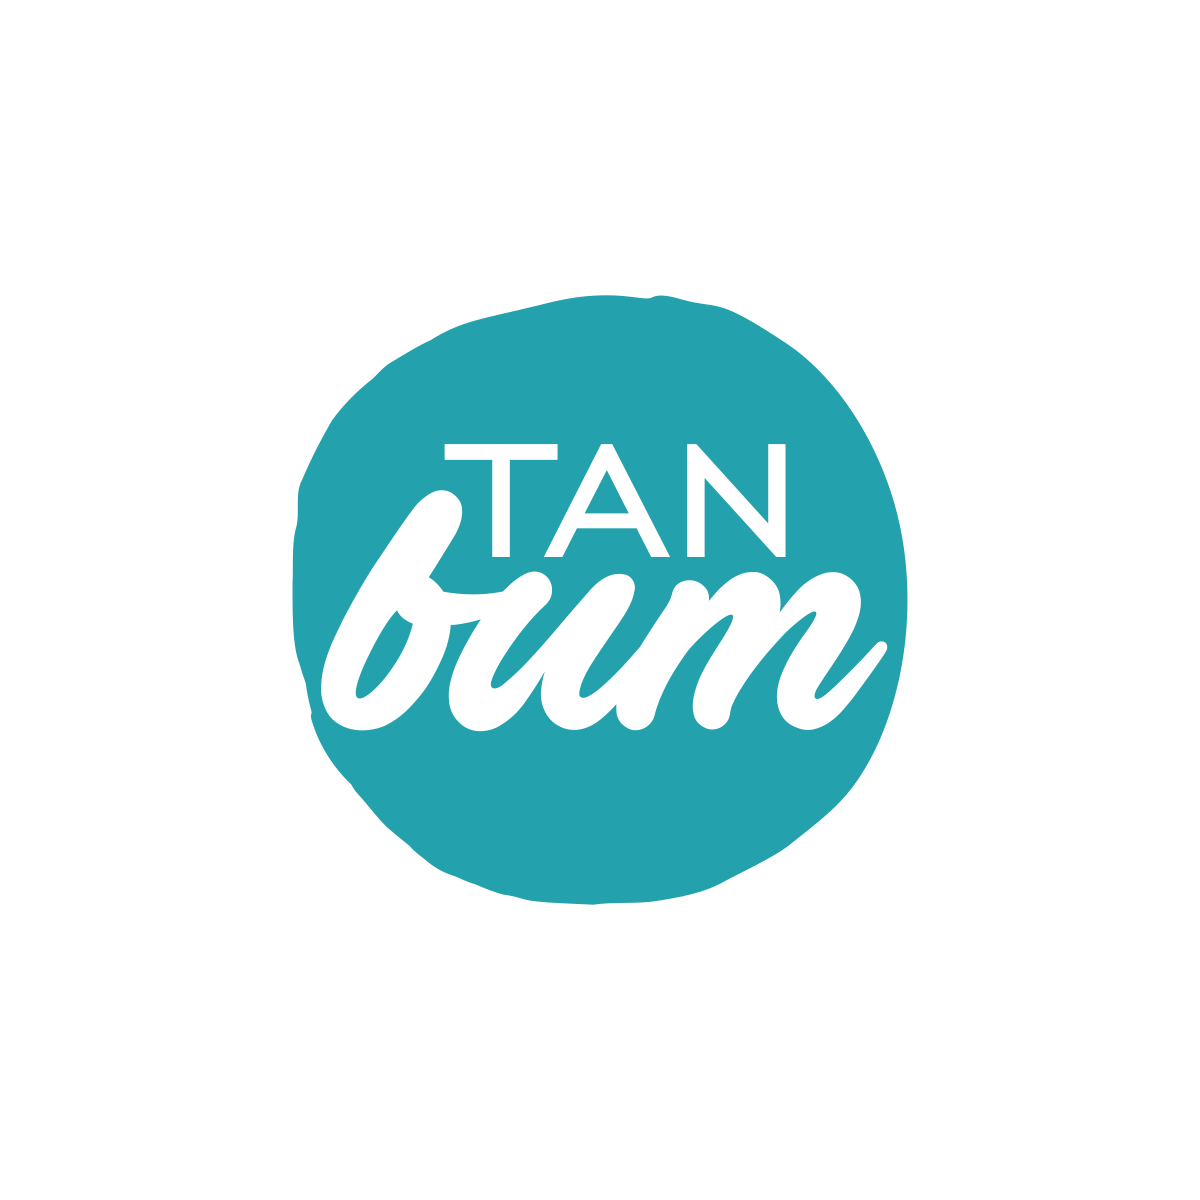 电子商务晒黑乳液网站标志为TanBum